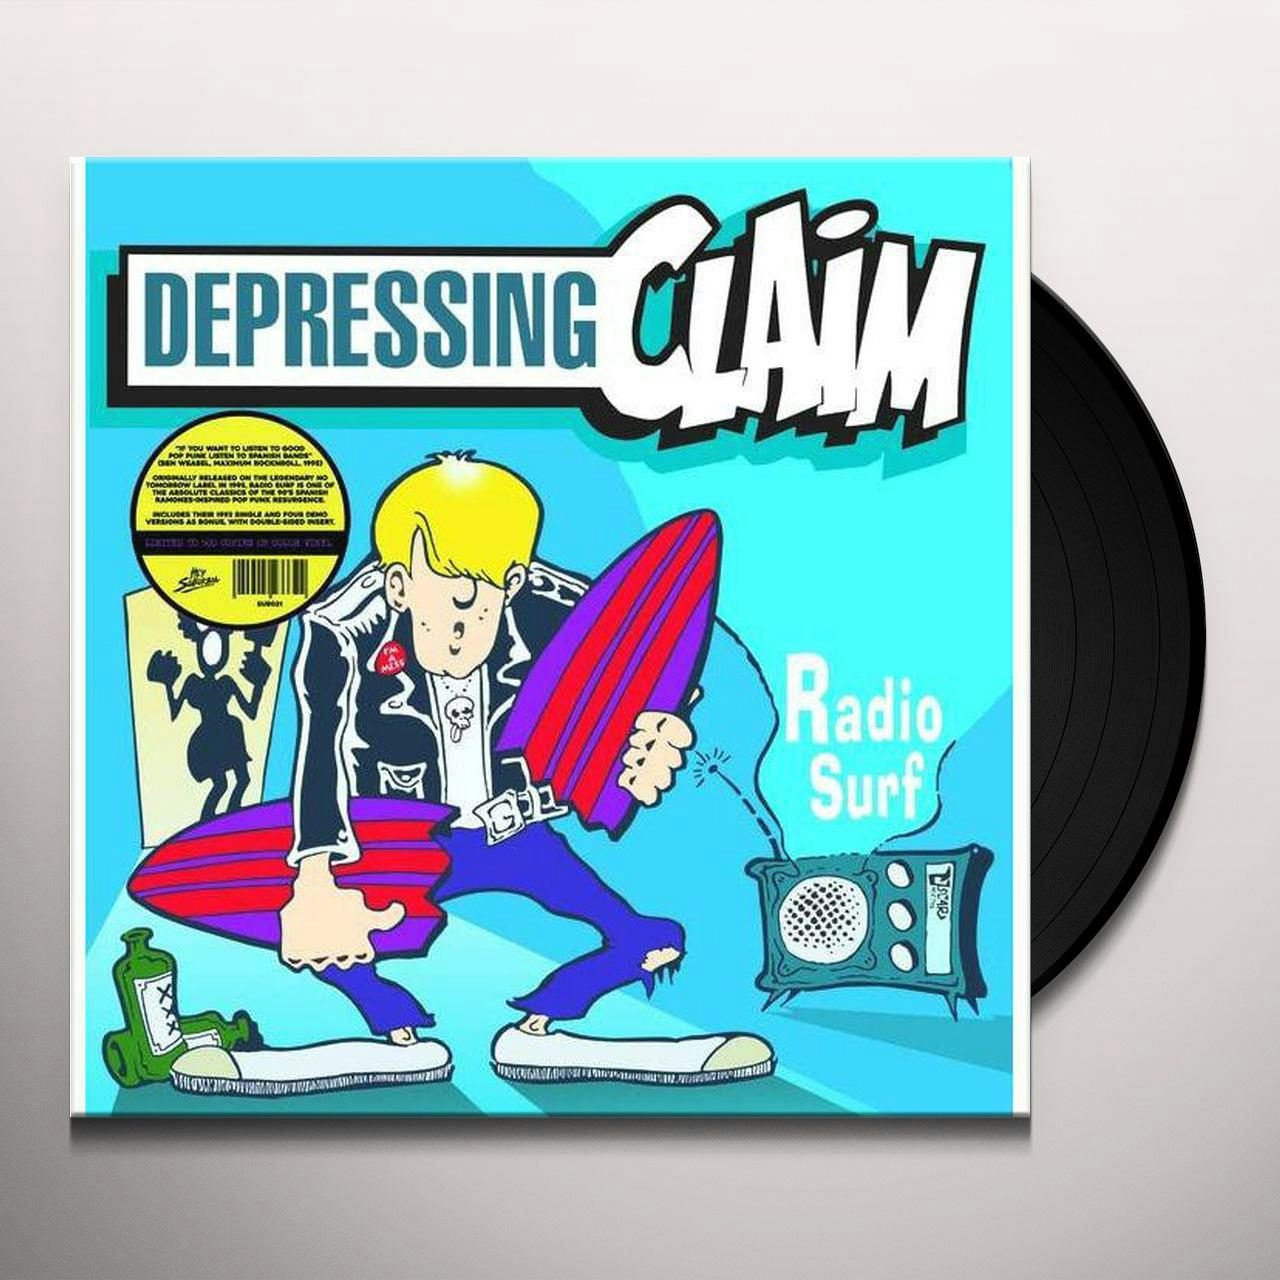 Depressing Claim LP - Radio Surf (Vinyl)